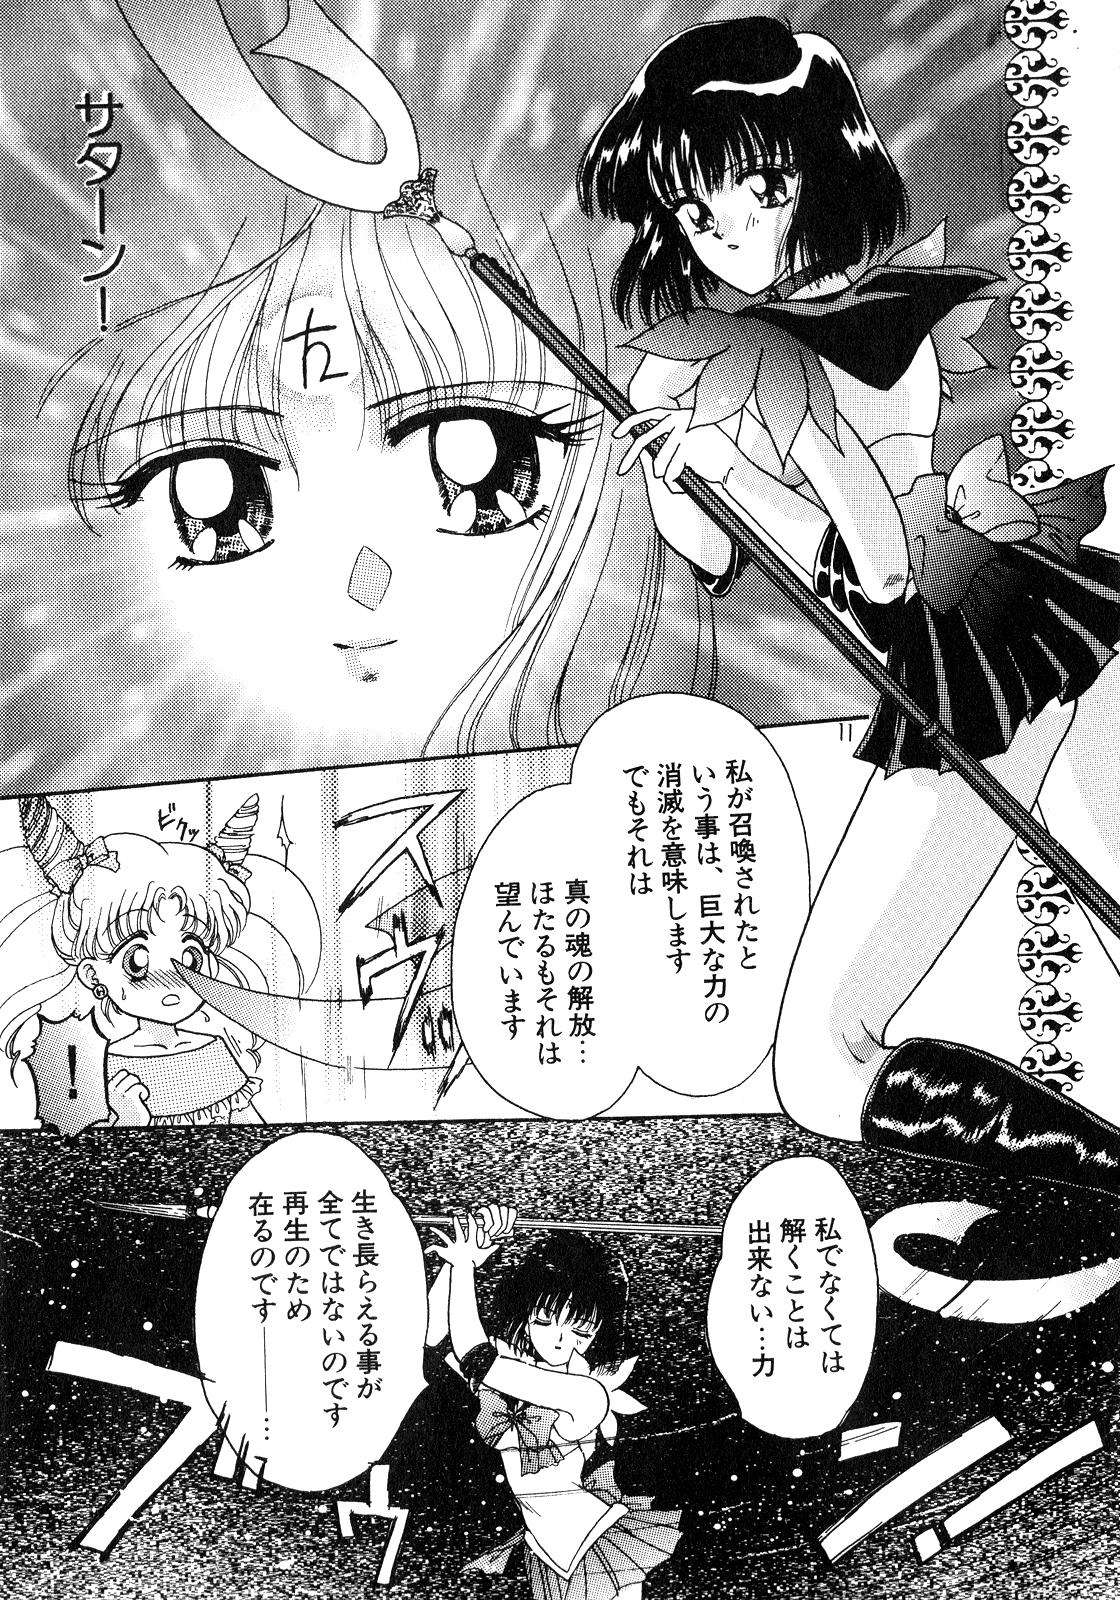 Blow Job Lunatic Party 8 - Sailor moon Cam Porn - Page 10